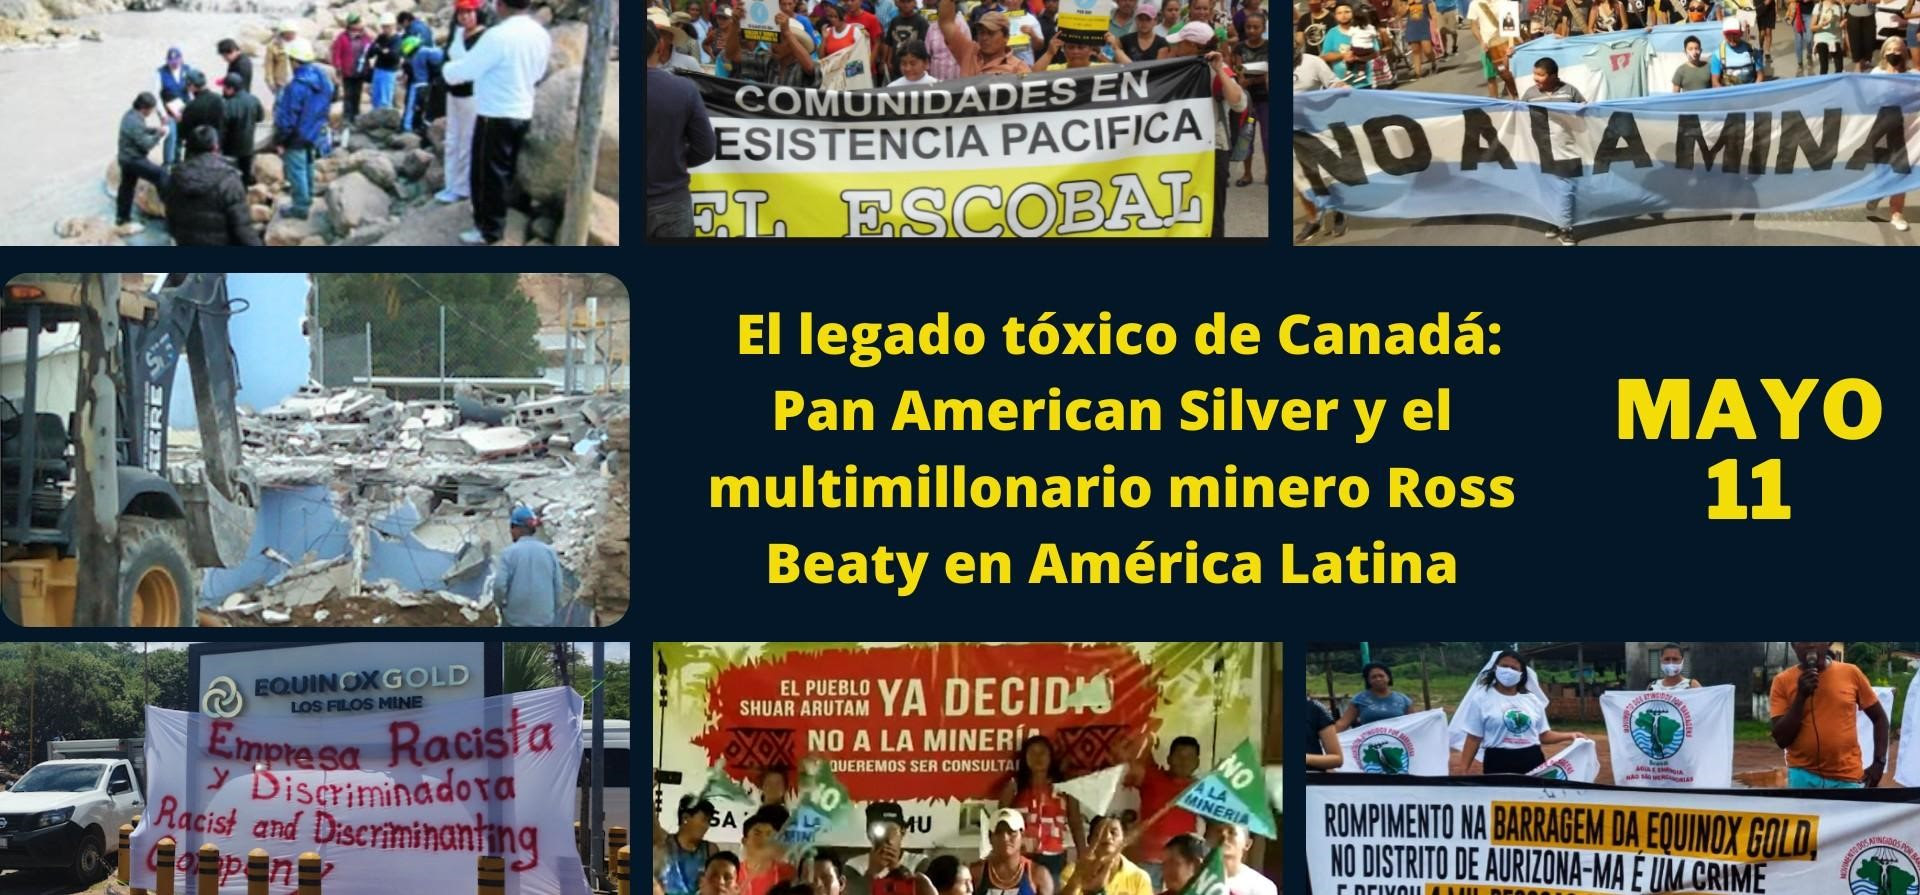 El legado toxico de Canada: Pan American Silver y el multimillonario Ross Beaty en America Latina